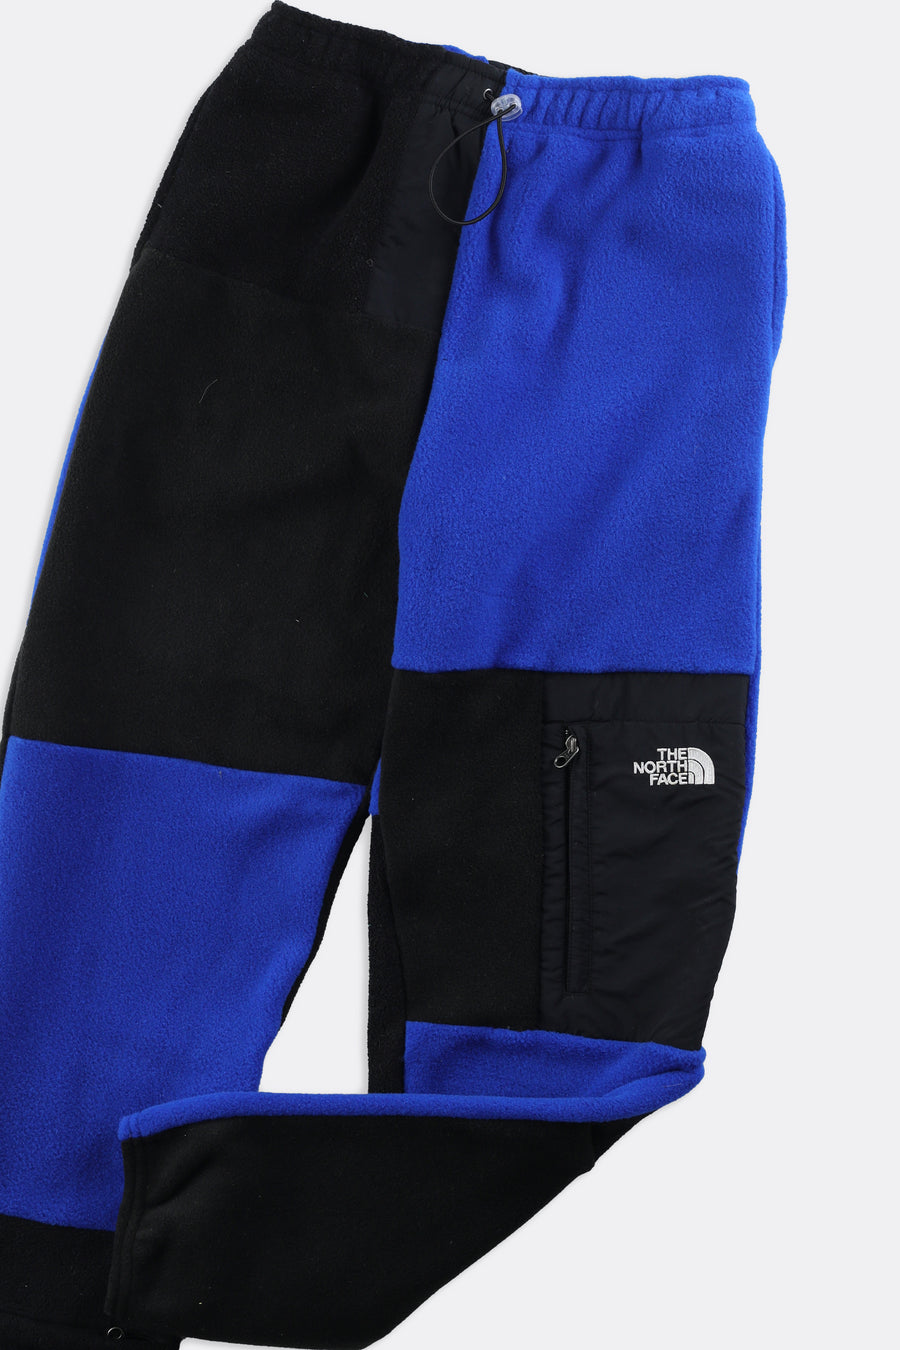 Rework Unisex North Face Patchwork Fleece Pant - S, M, XL